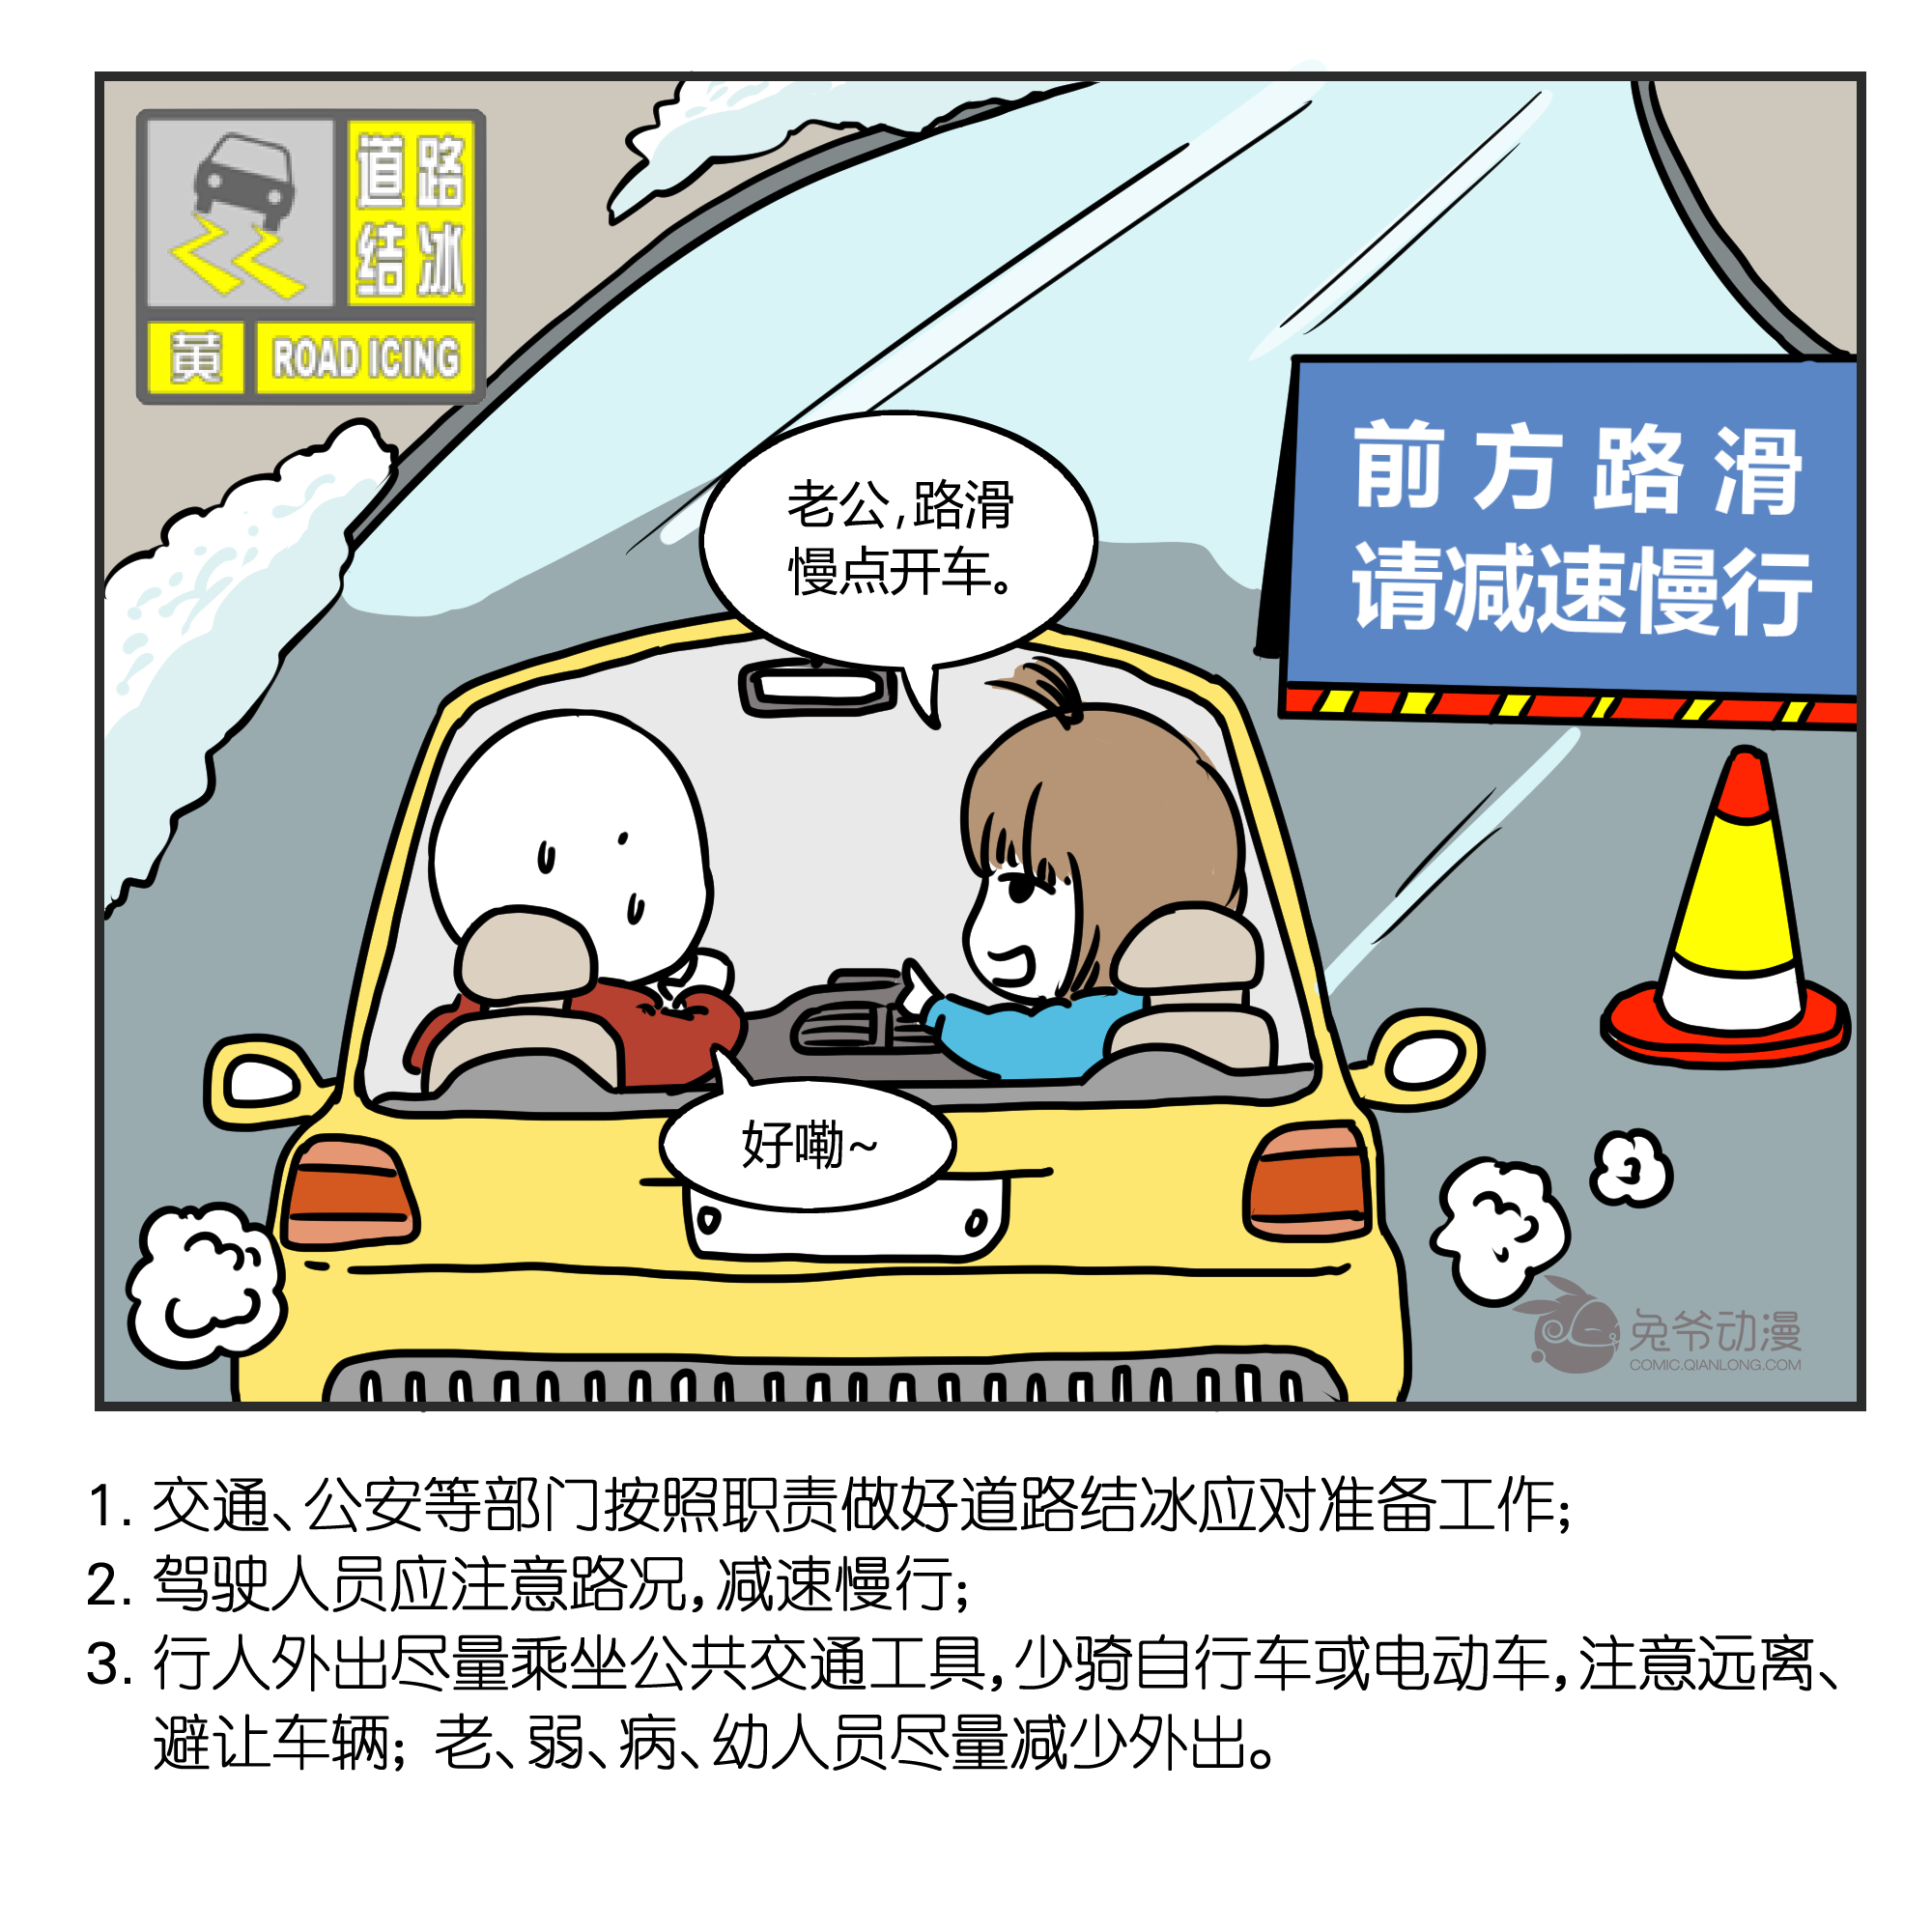 北京市2020年02月01日23时00分发布道路结冰黄色预警信号